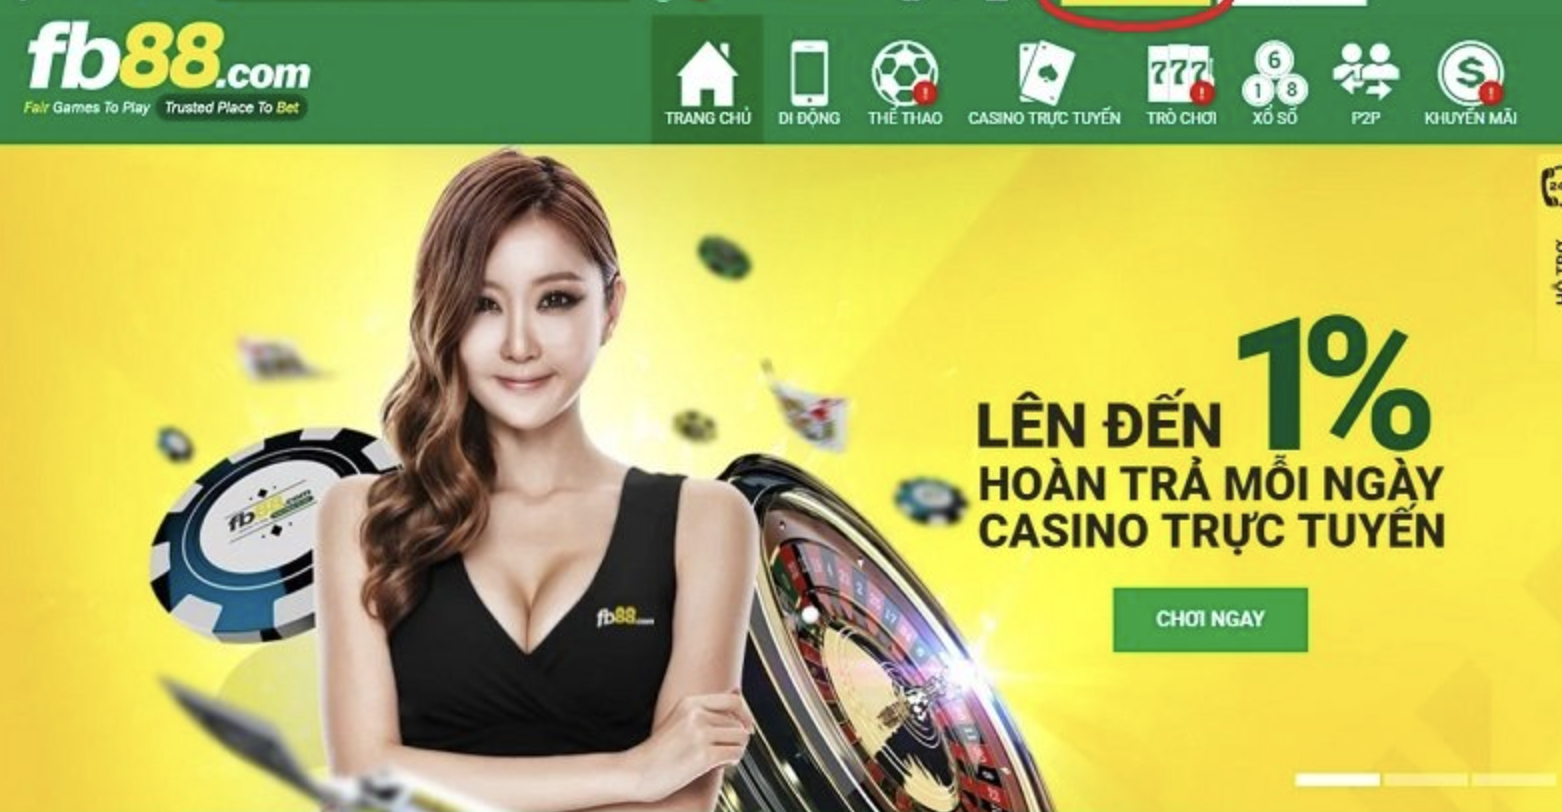 FB88 - Chơi Casino tại nhà cái thành lập từ 2016 rất uy tín tại Việt Nam